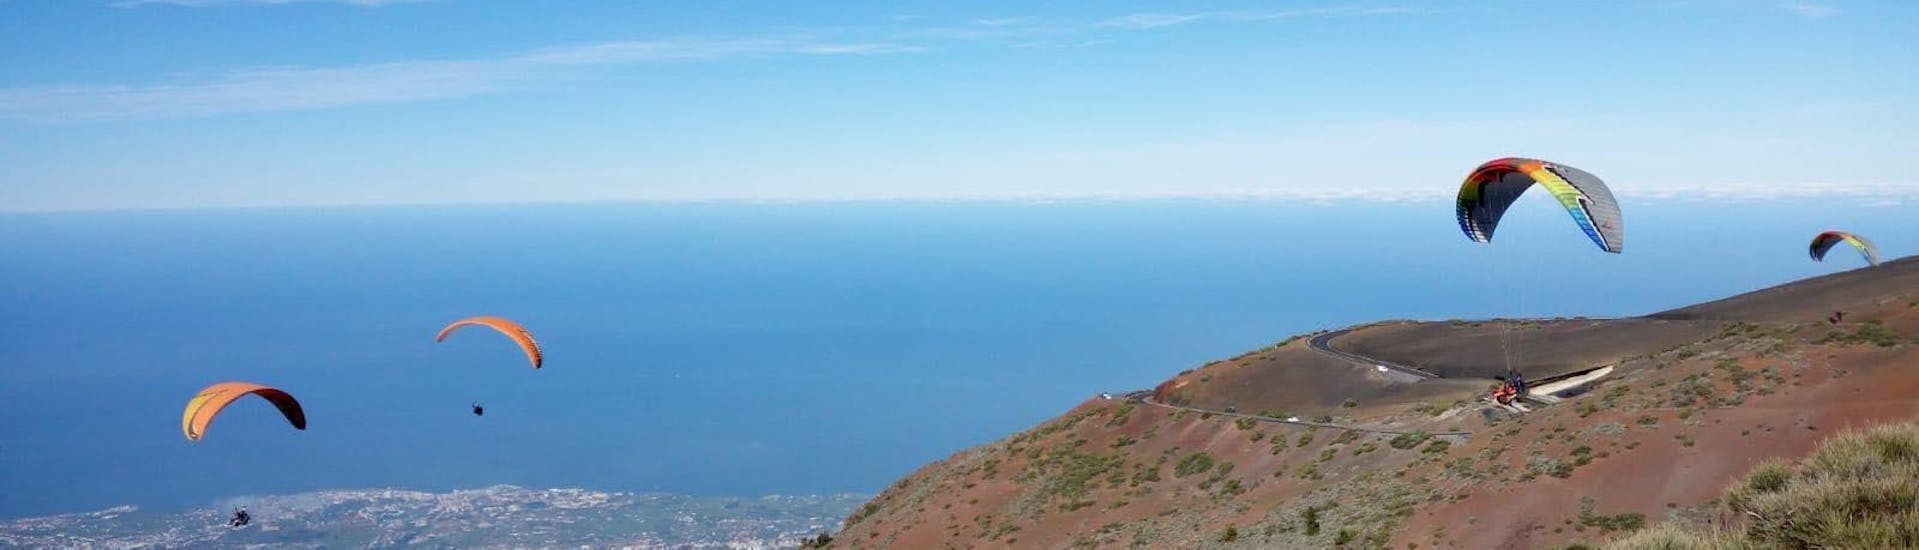 Volo panoramico in parapendio biposto - Parco nazionale del Teide.